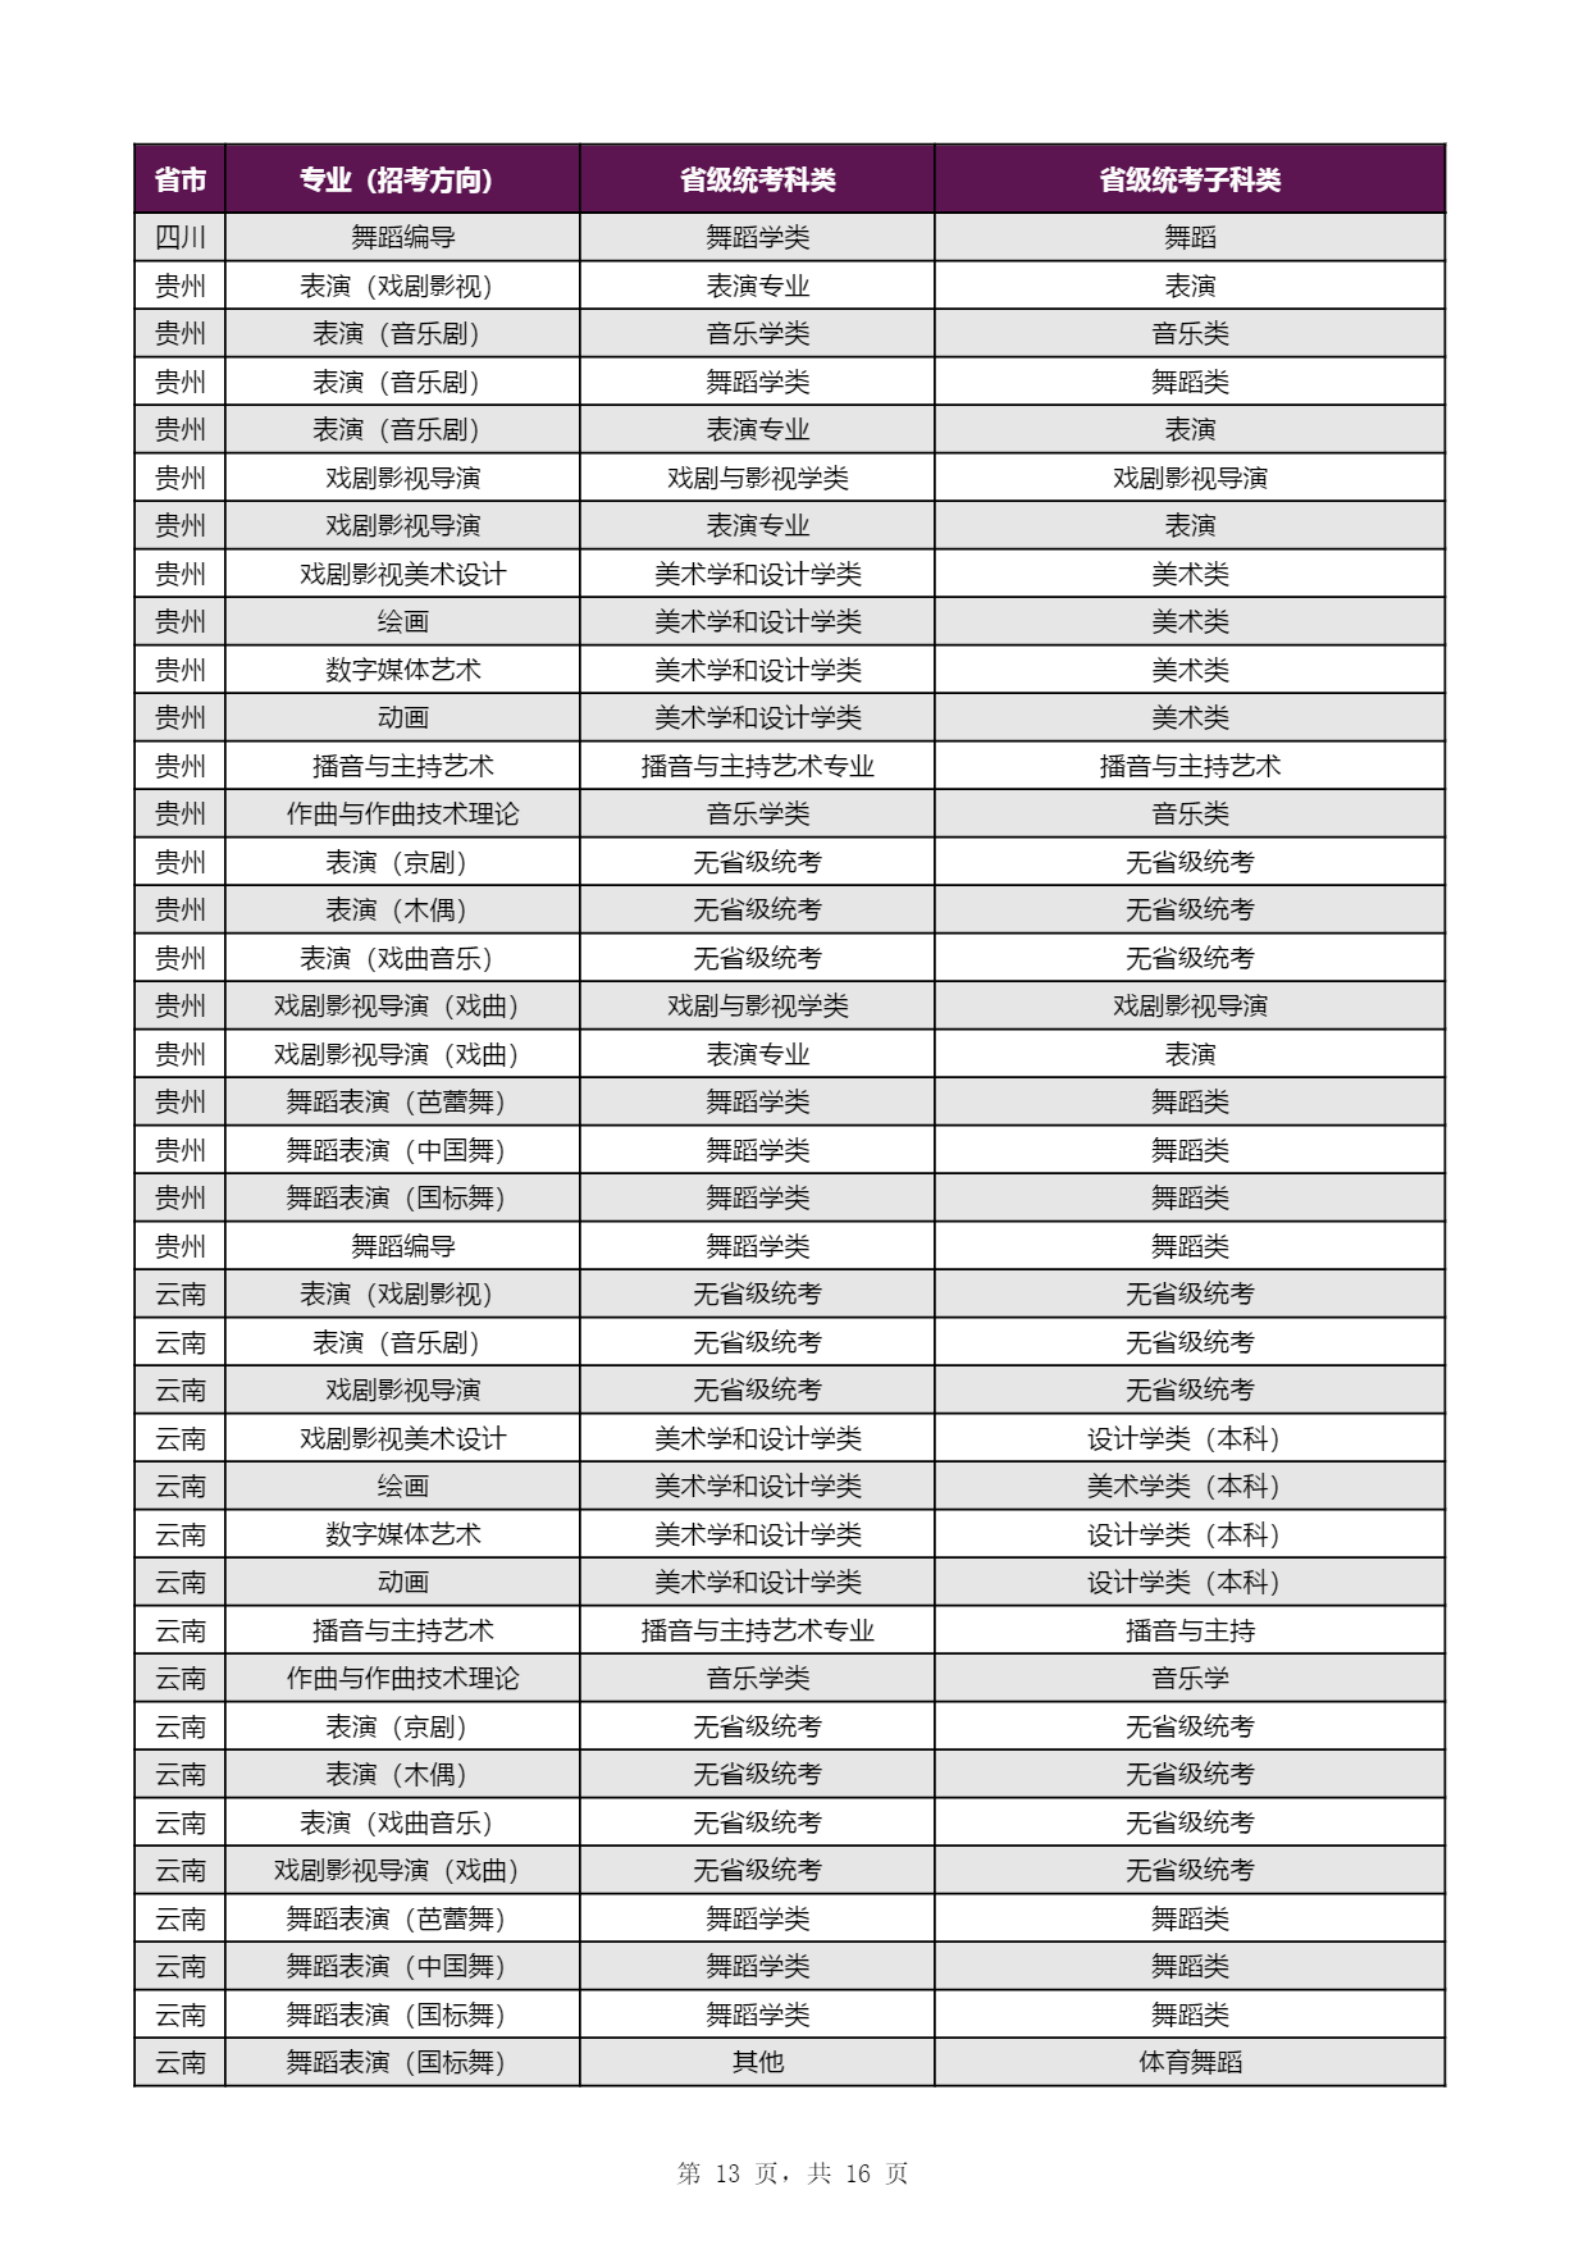 【子科类对应表】上海戏剧学院2023年本科招生专业（招考方向）与各省级统考子科类对应表_12.png